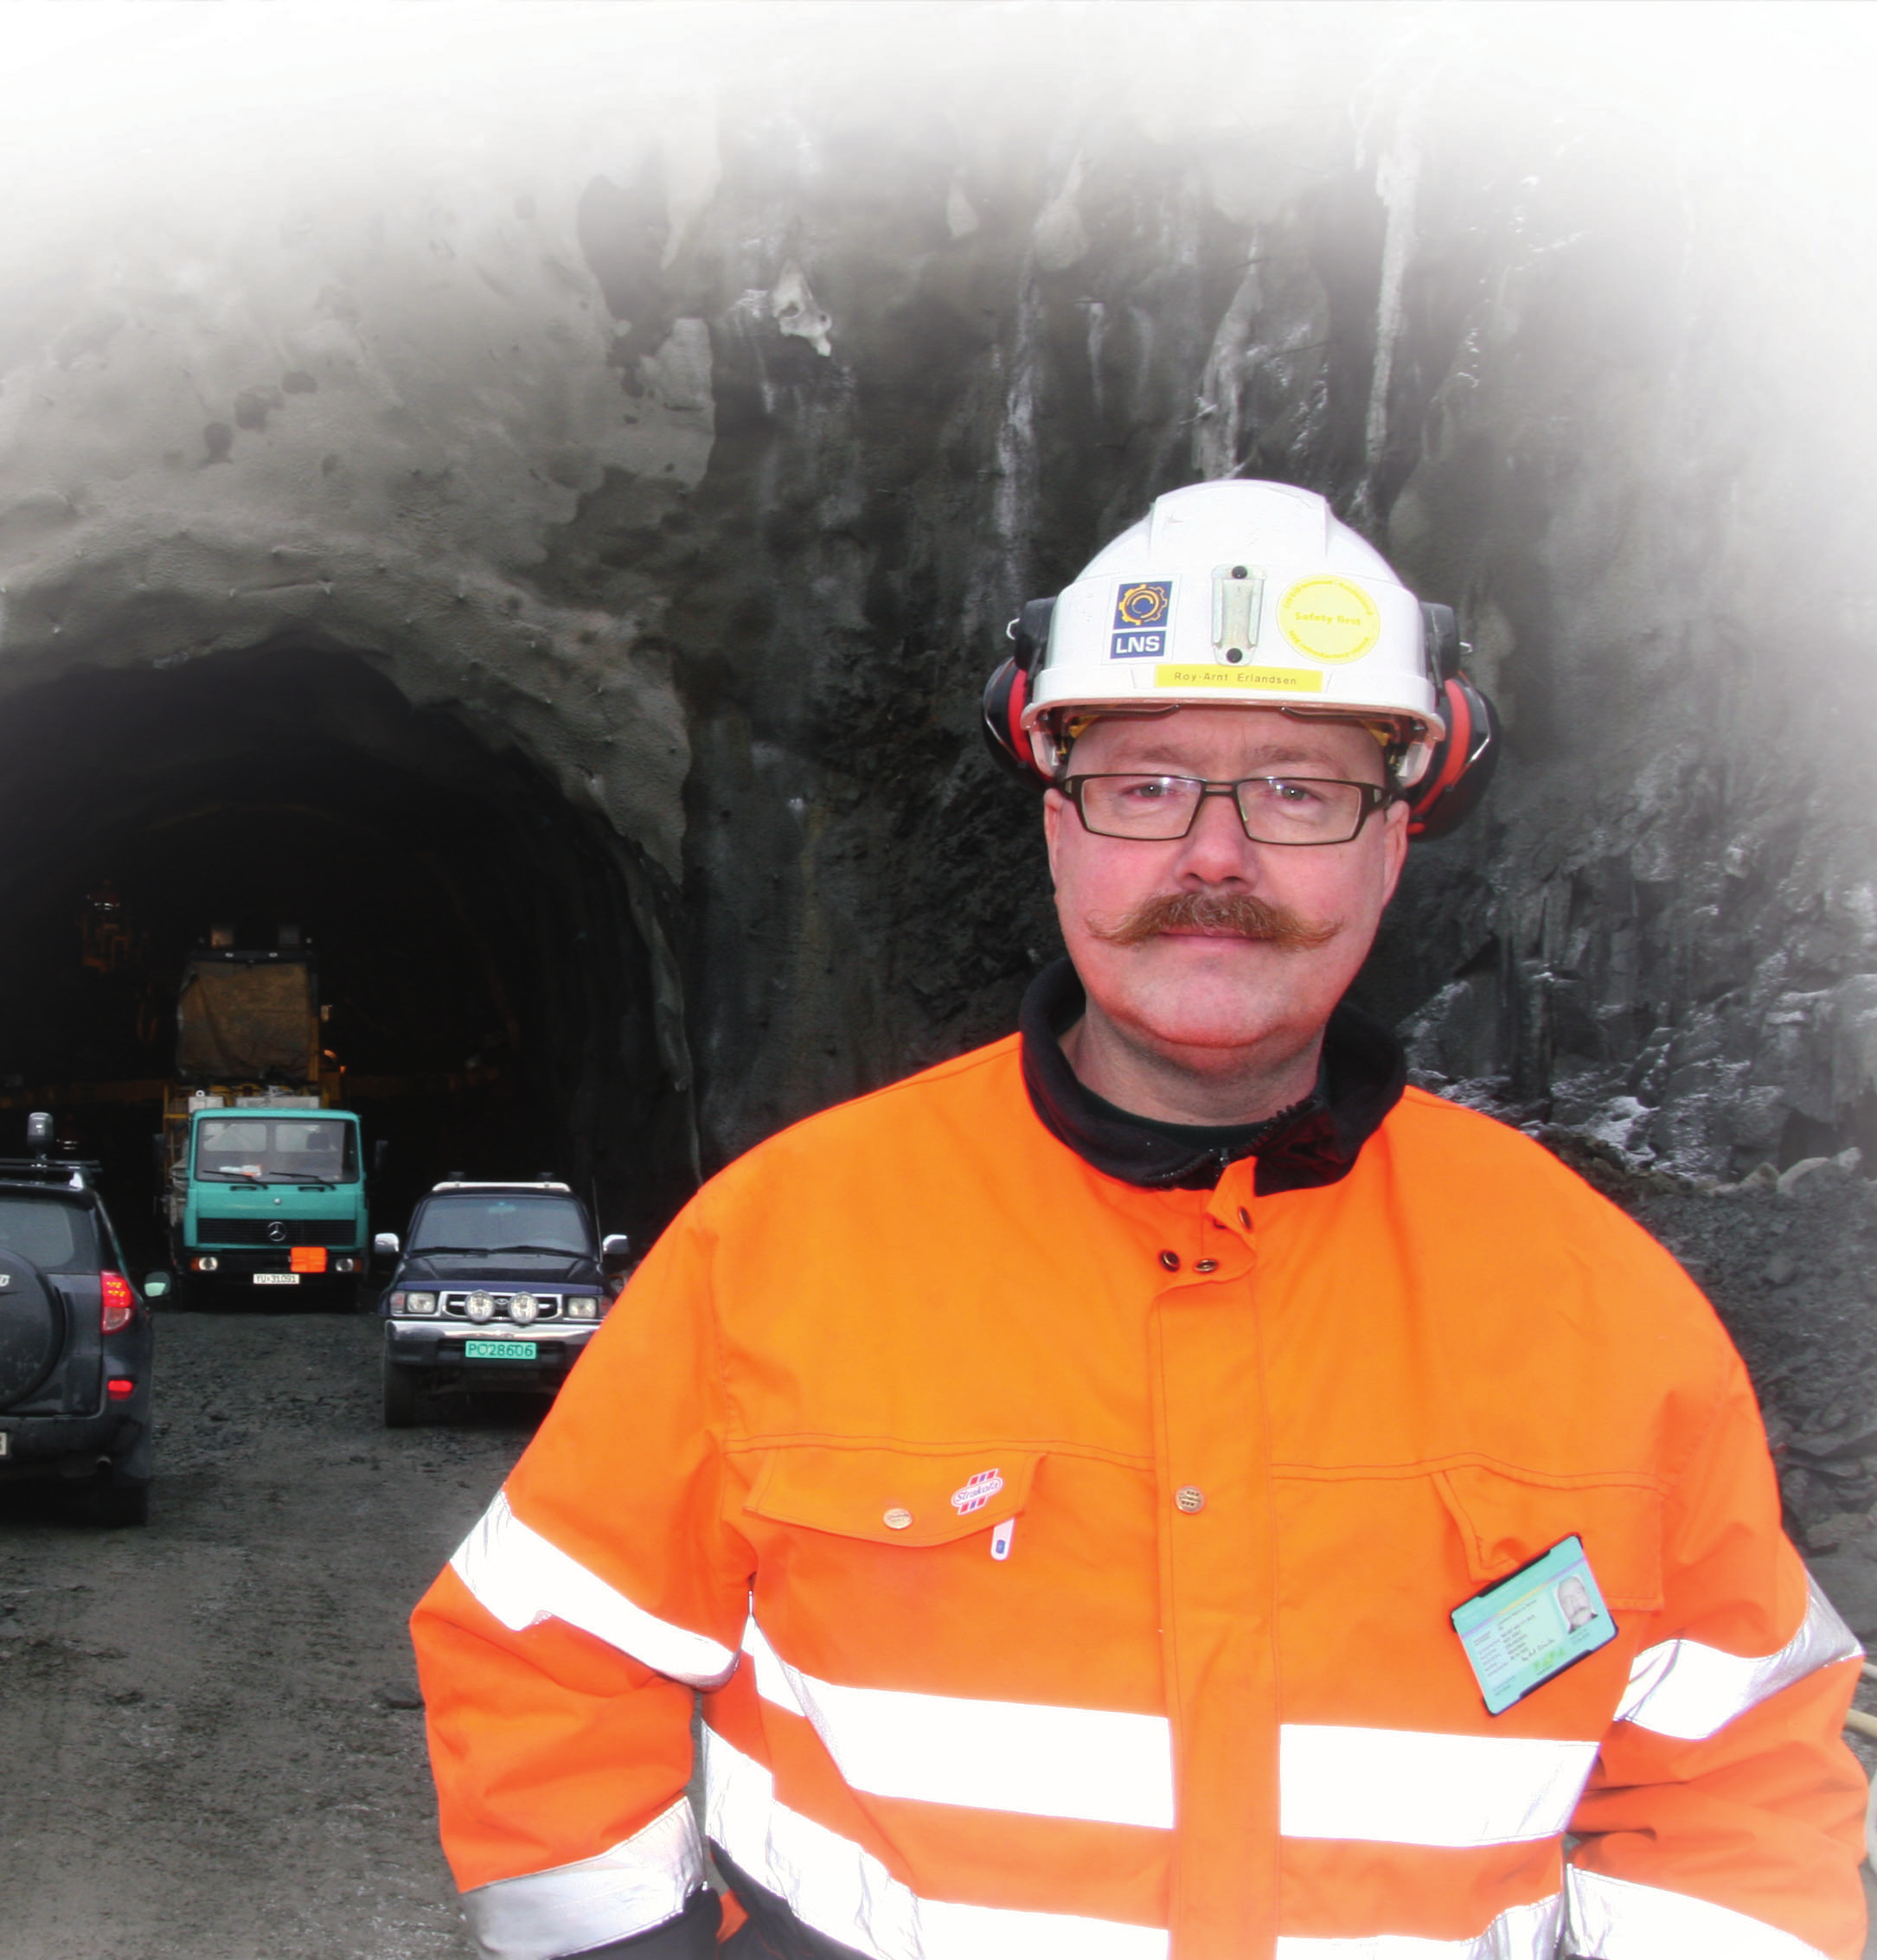 innbyggerne i Grøtavær pendler til og fra jobb i Harstad hver dag. - Behovet for tunnel er absolutt til stede, bekrefter anleggslederen. Nesten hele tunnelen skal drives på stigning.